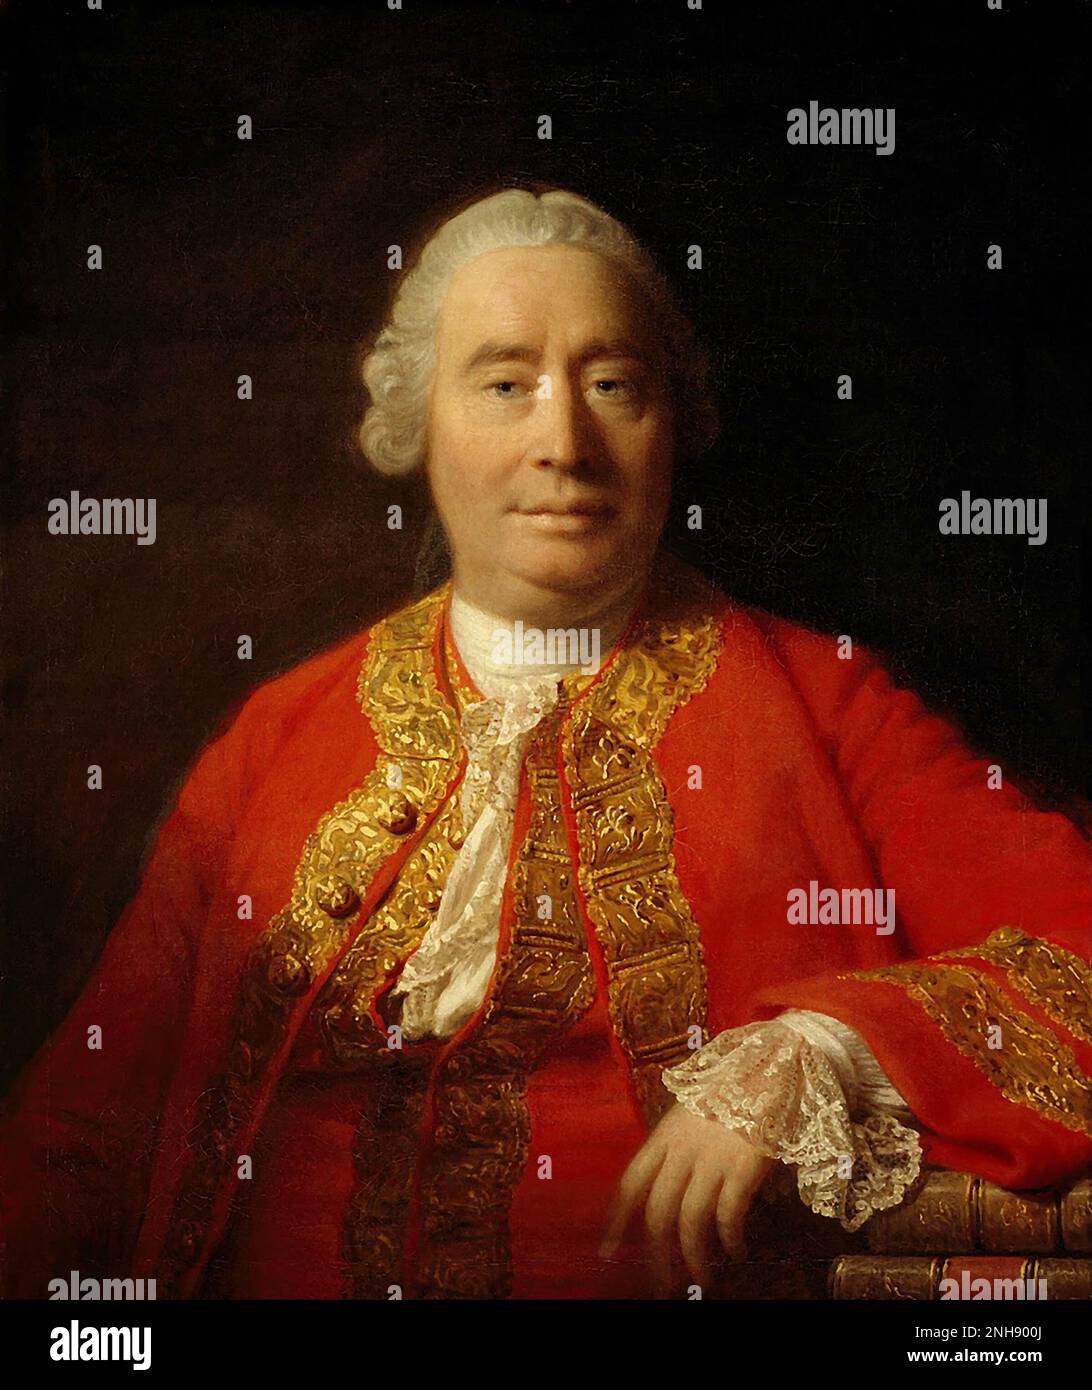 David Hume (1711-1776), philosophe, historien et économiste écossais des Lumières, mieux connu pour son système très influent d'empirisme philosophique, de scepticisme et de naturalisme. Peinture par Allan Ramsay (1713-1784), 1766. Banque D'Images